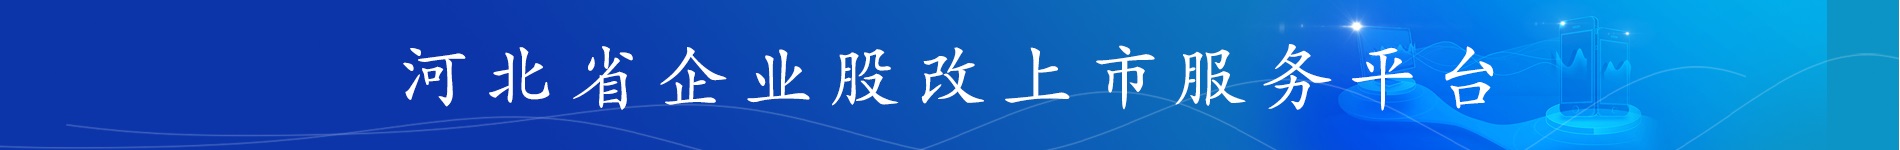 河北省企业股改上市服务平台